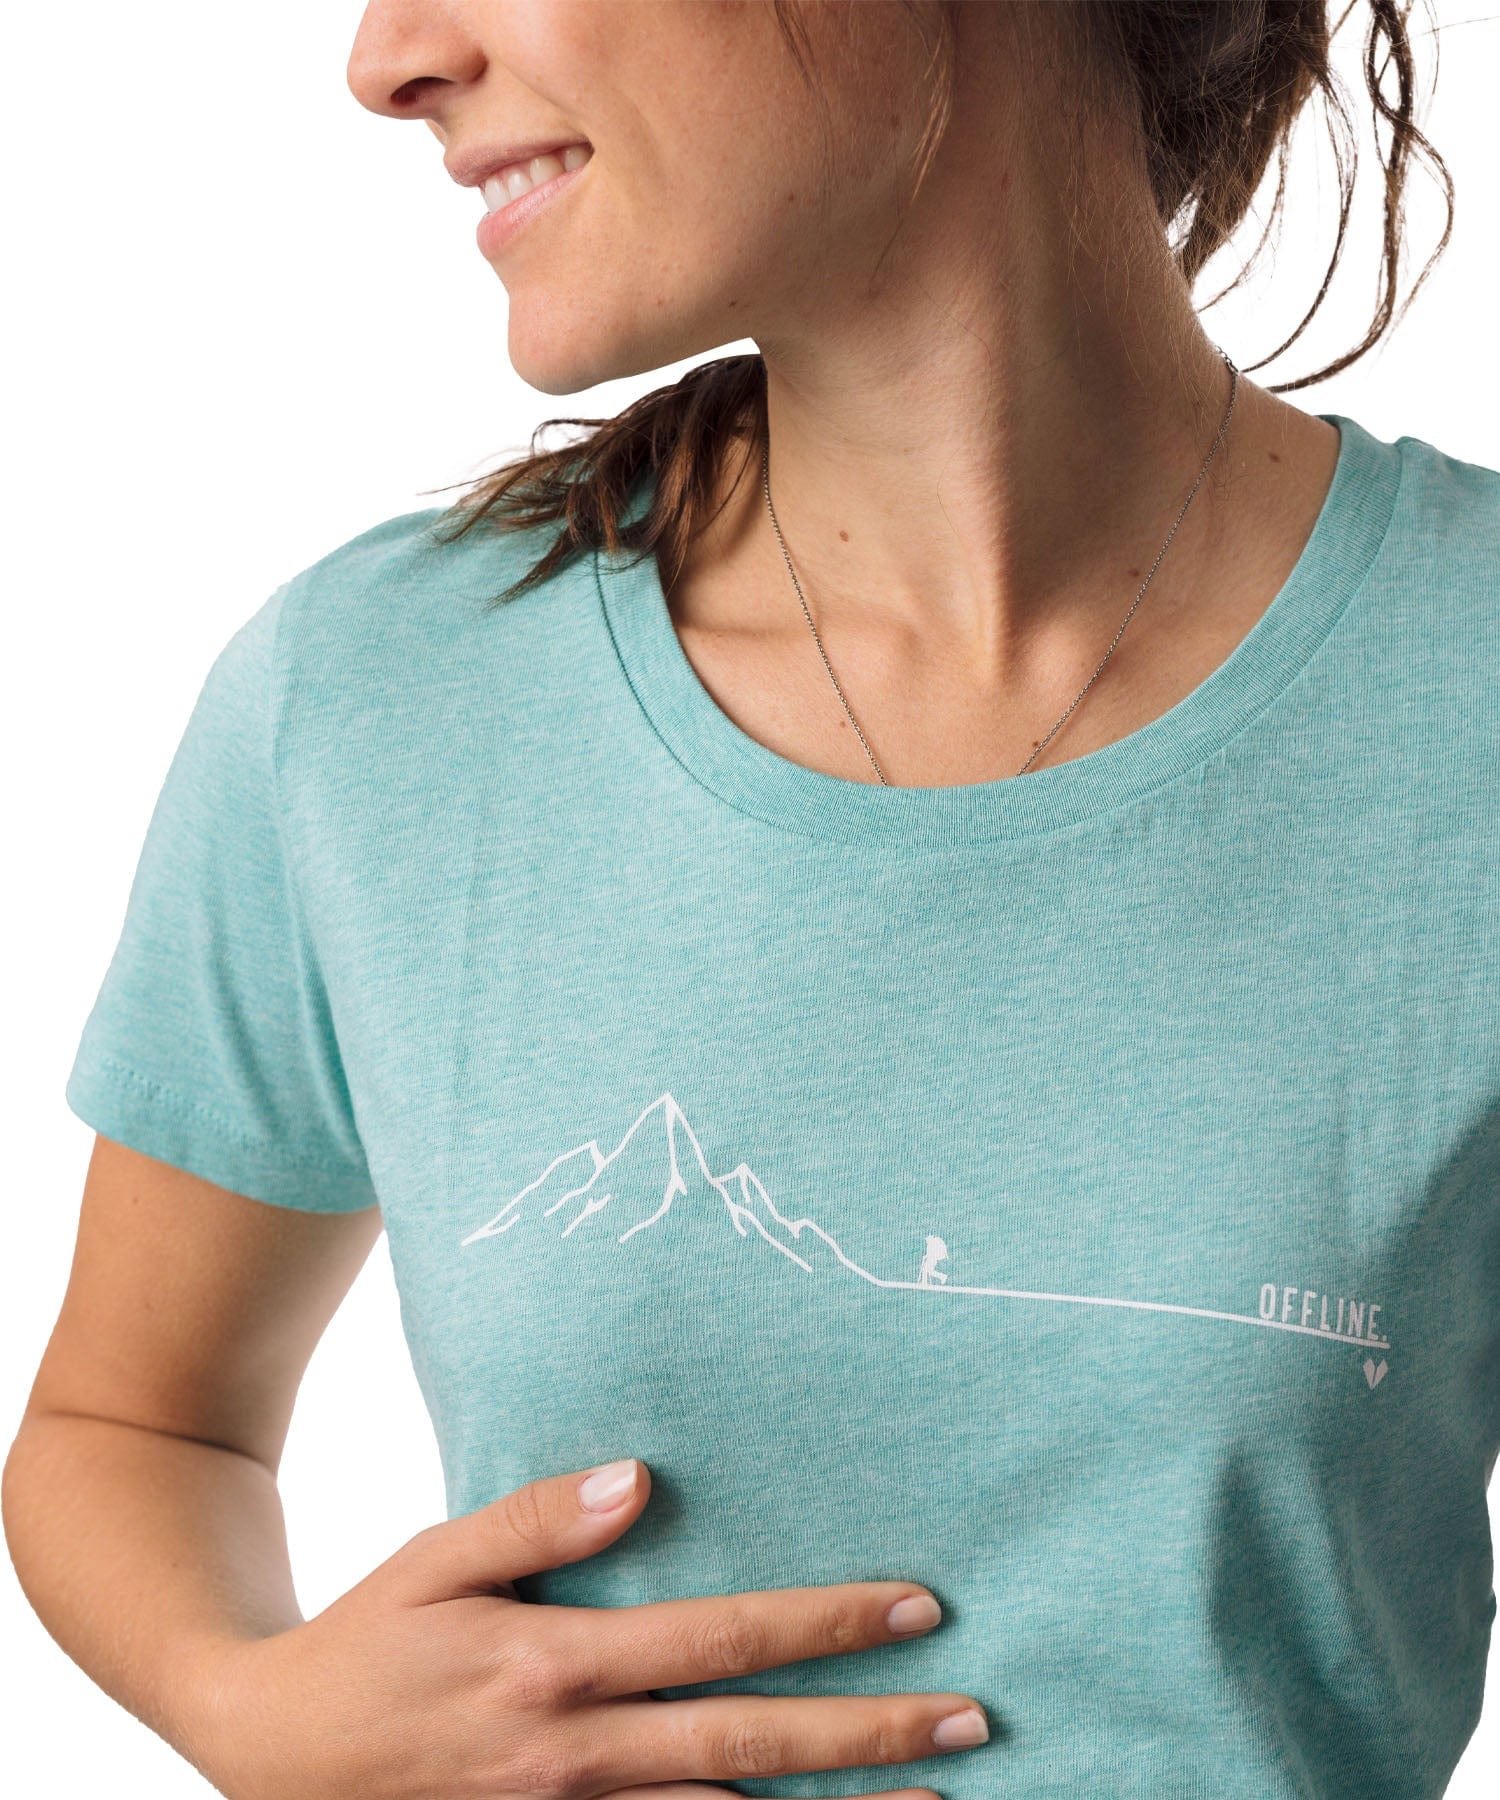 Offline - Damen Premium Organic Shirt von Bergmensch